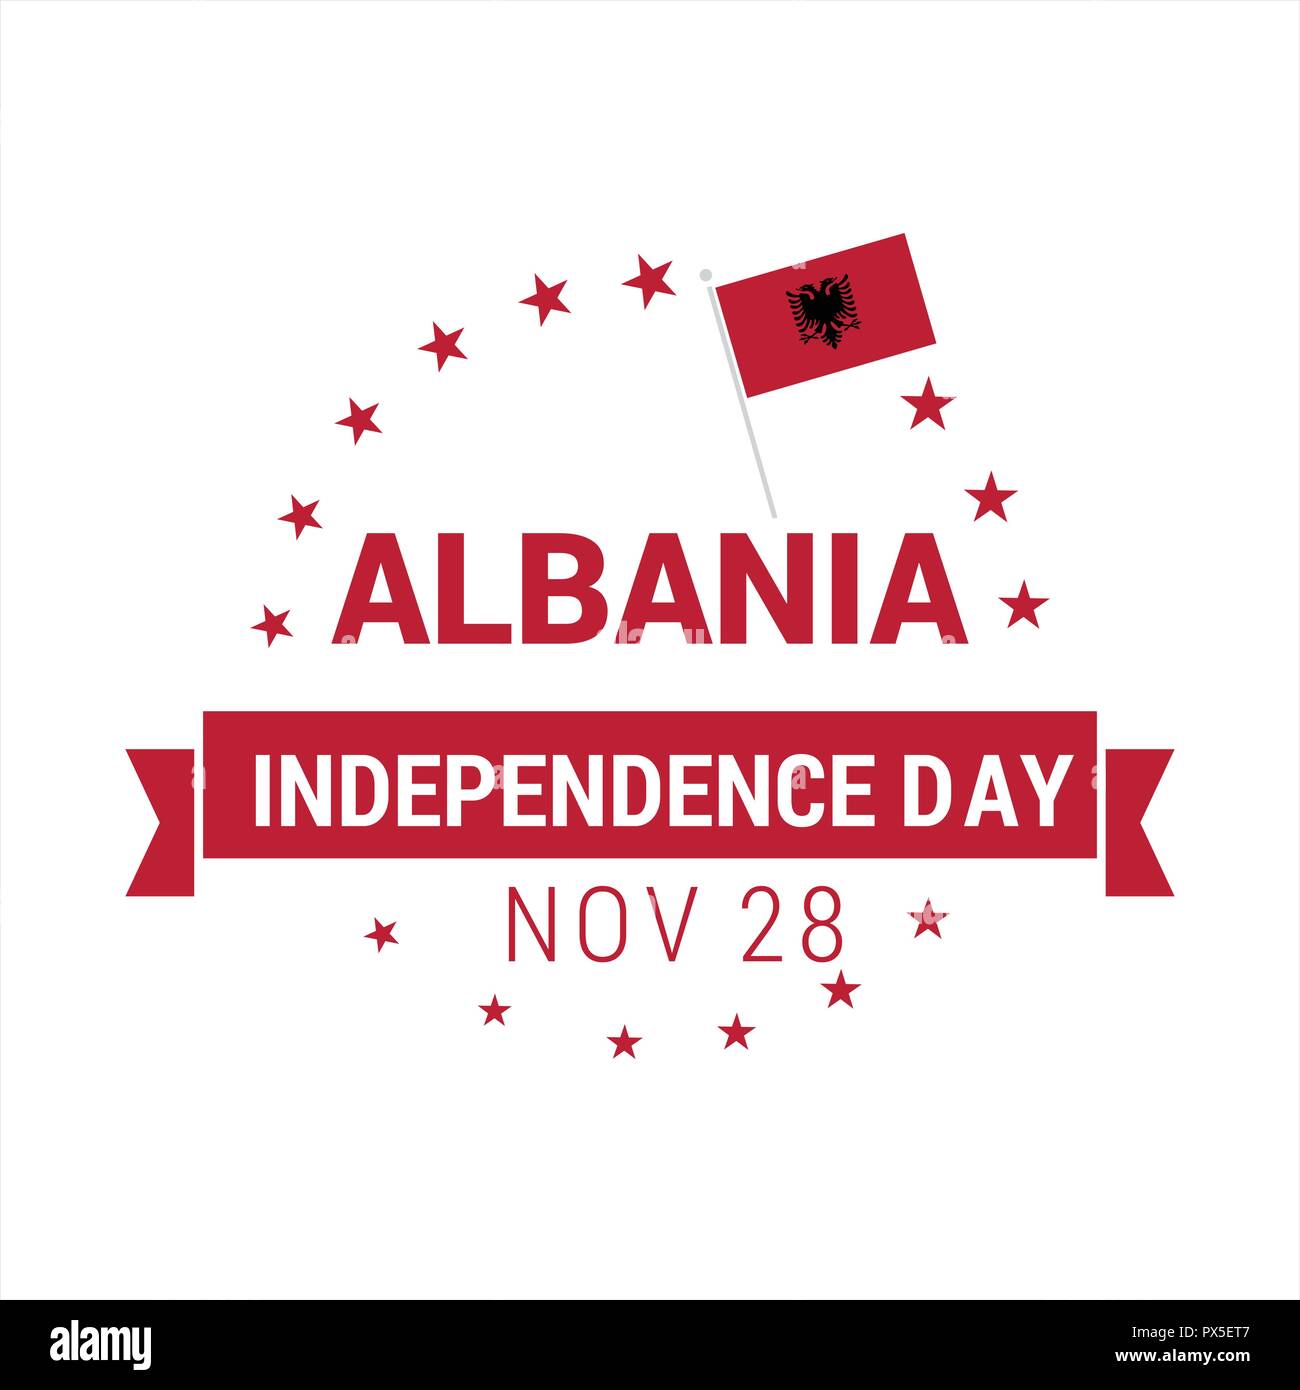 Albania id card templates